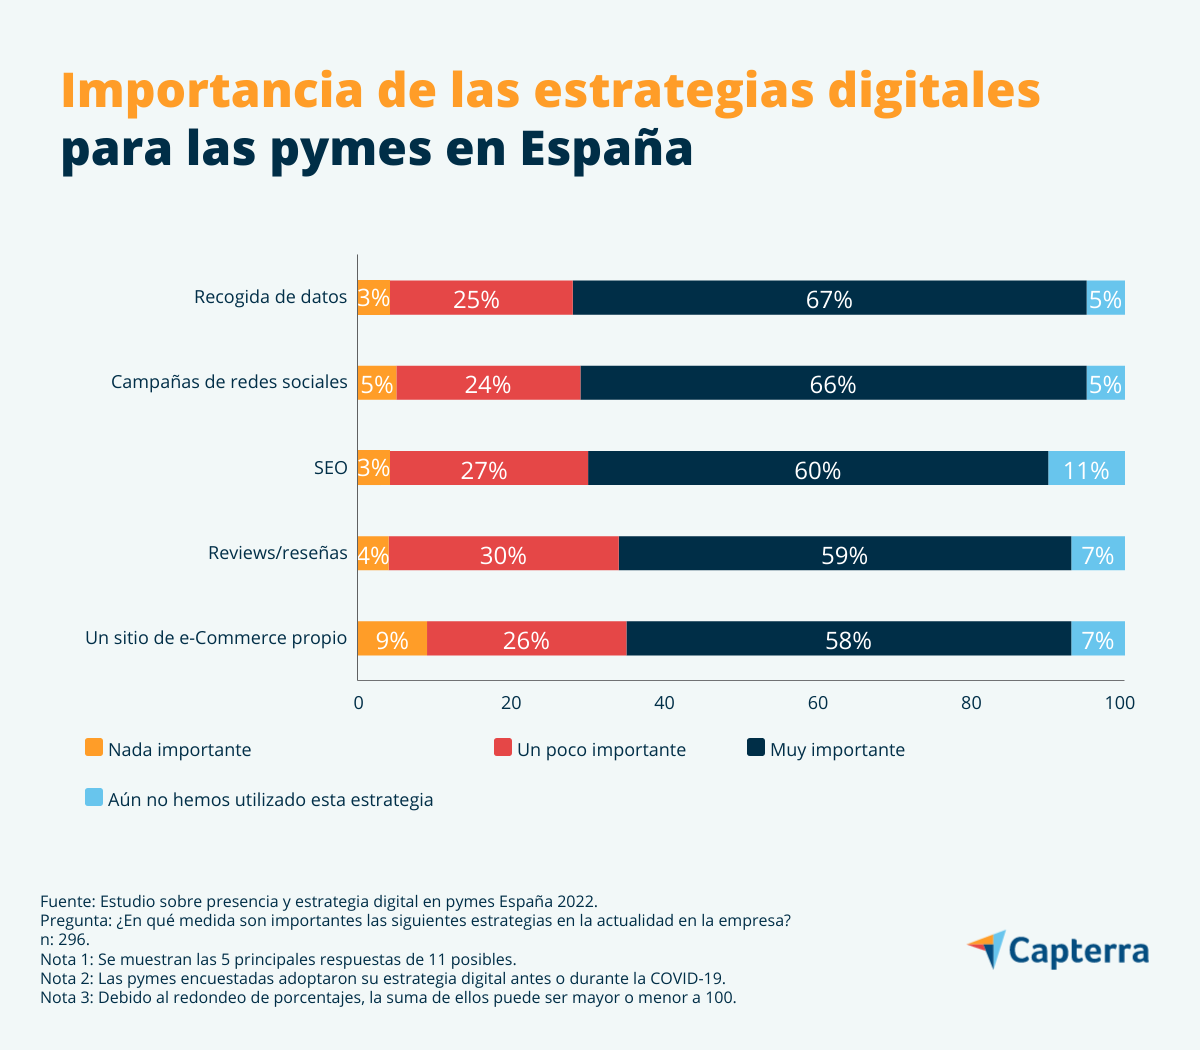 Importancia de las distintas estrategias digitales para las pymes en España